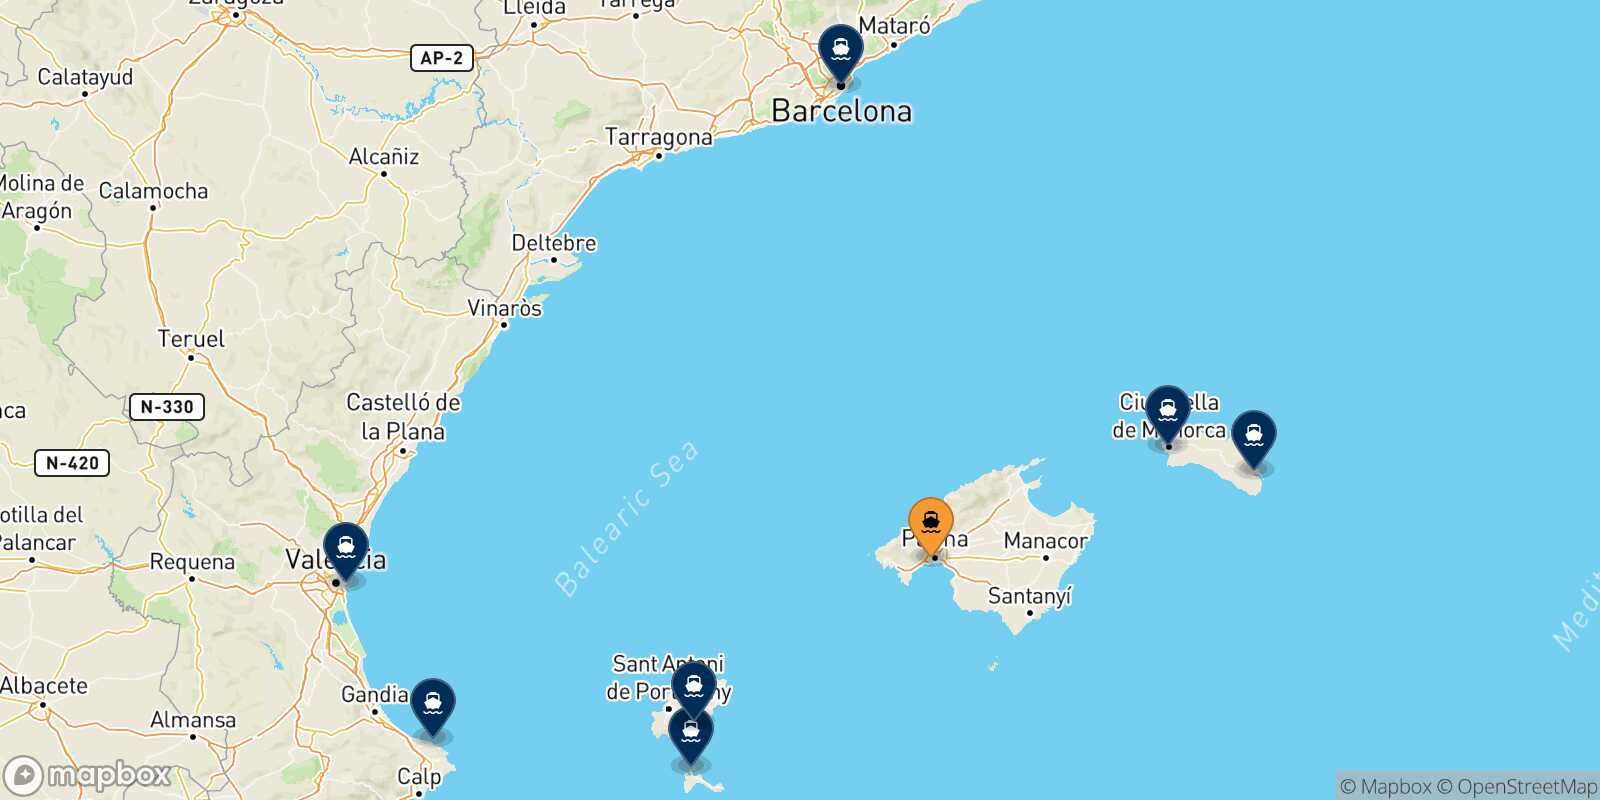 Mappa delle destinazioni raggiungibili da Palma Di Maiorca